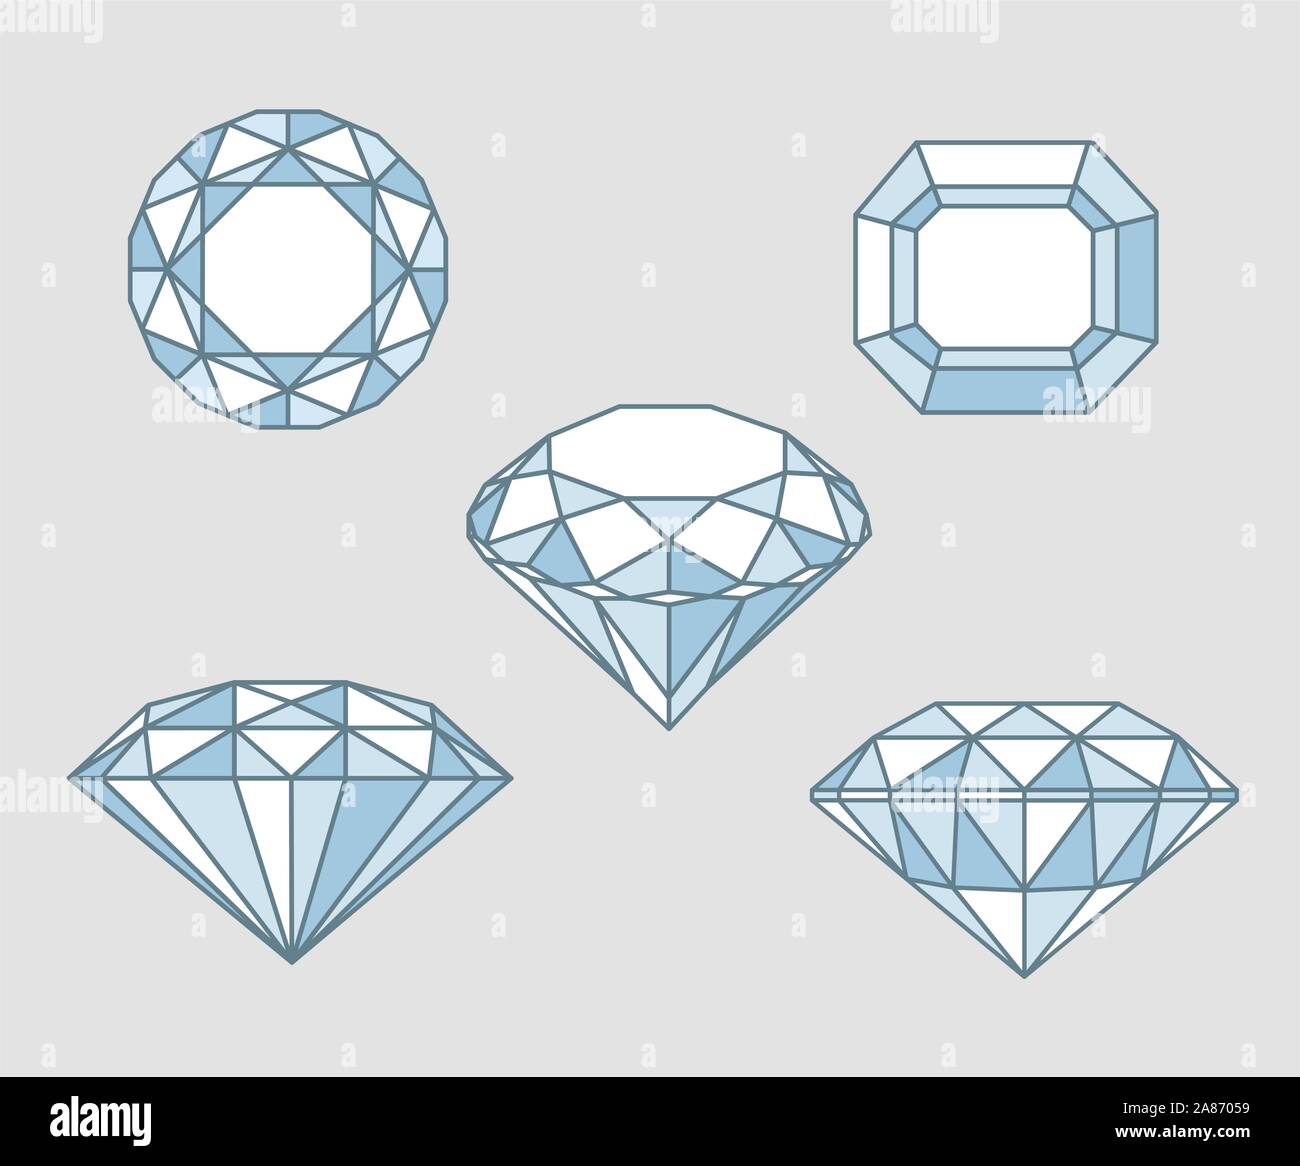 Fünf funkelnde Diamanten Felsen aus verschiedenen Blickwinkeln sicht Vektor-illustration Skizze. Stock Vektor